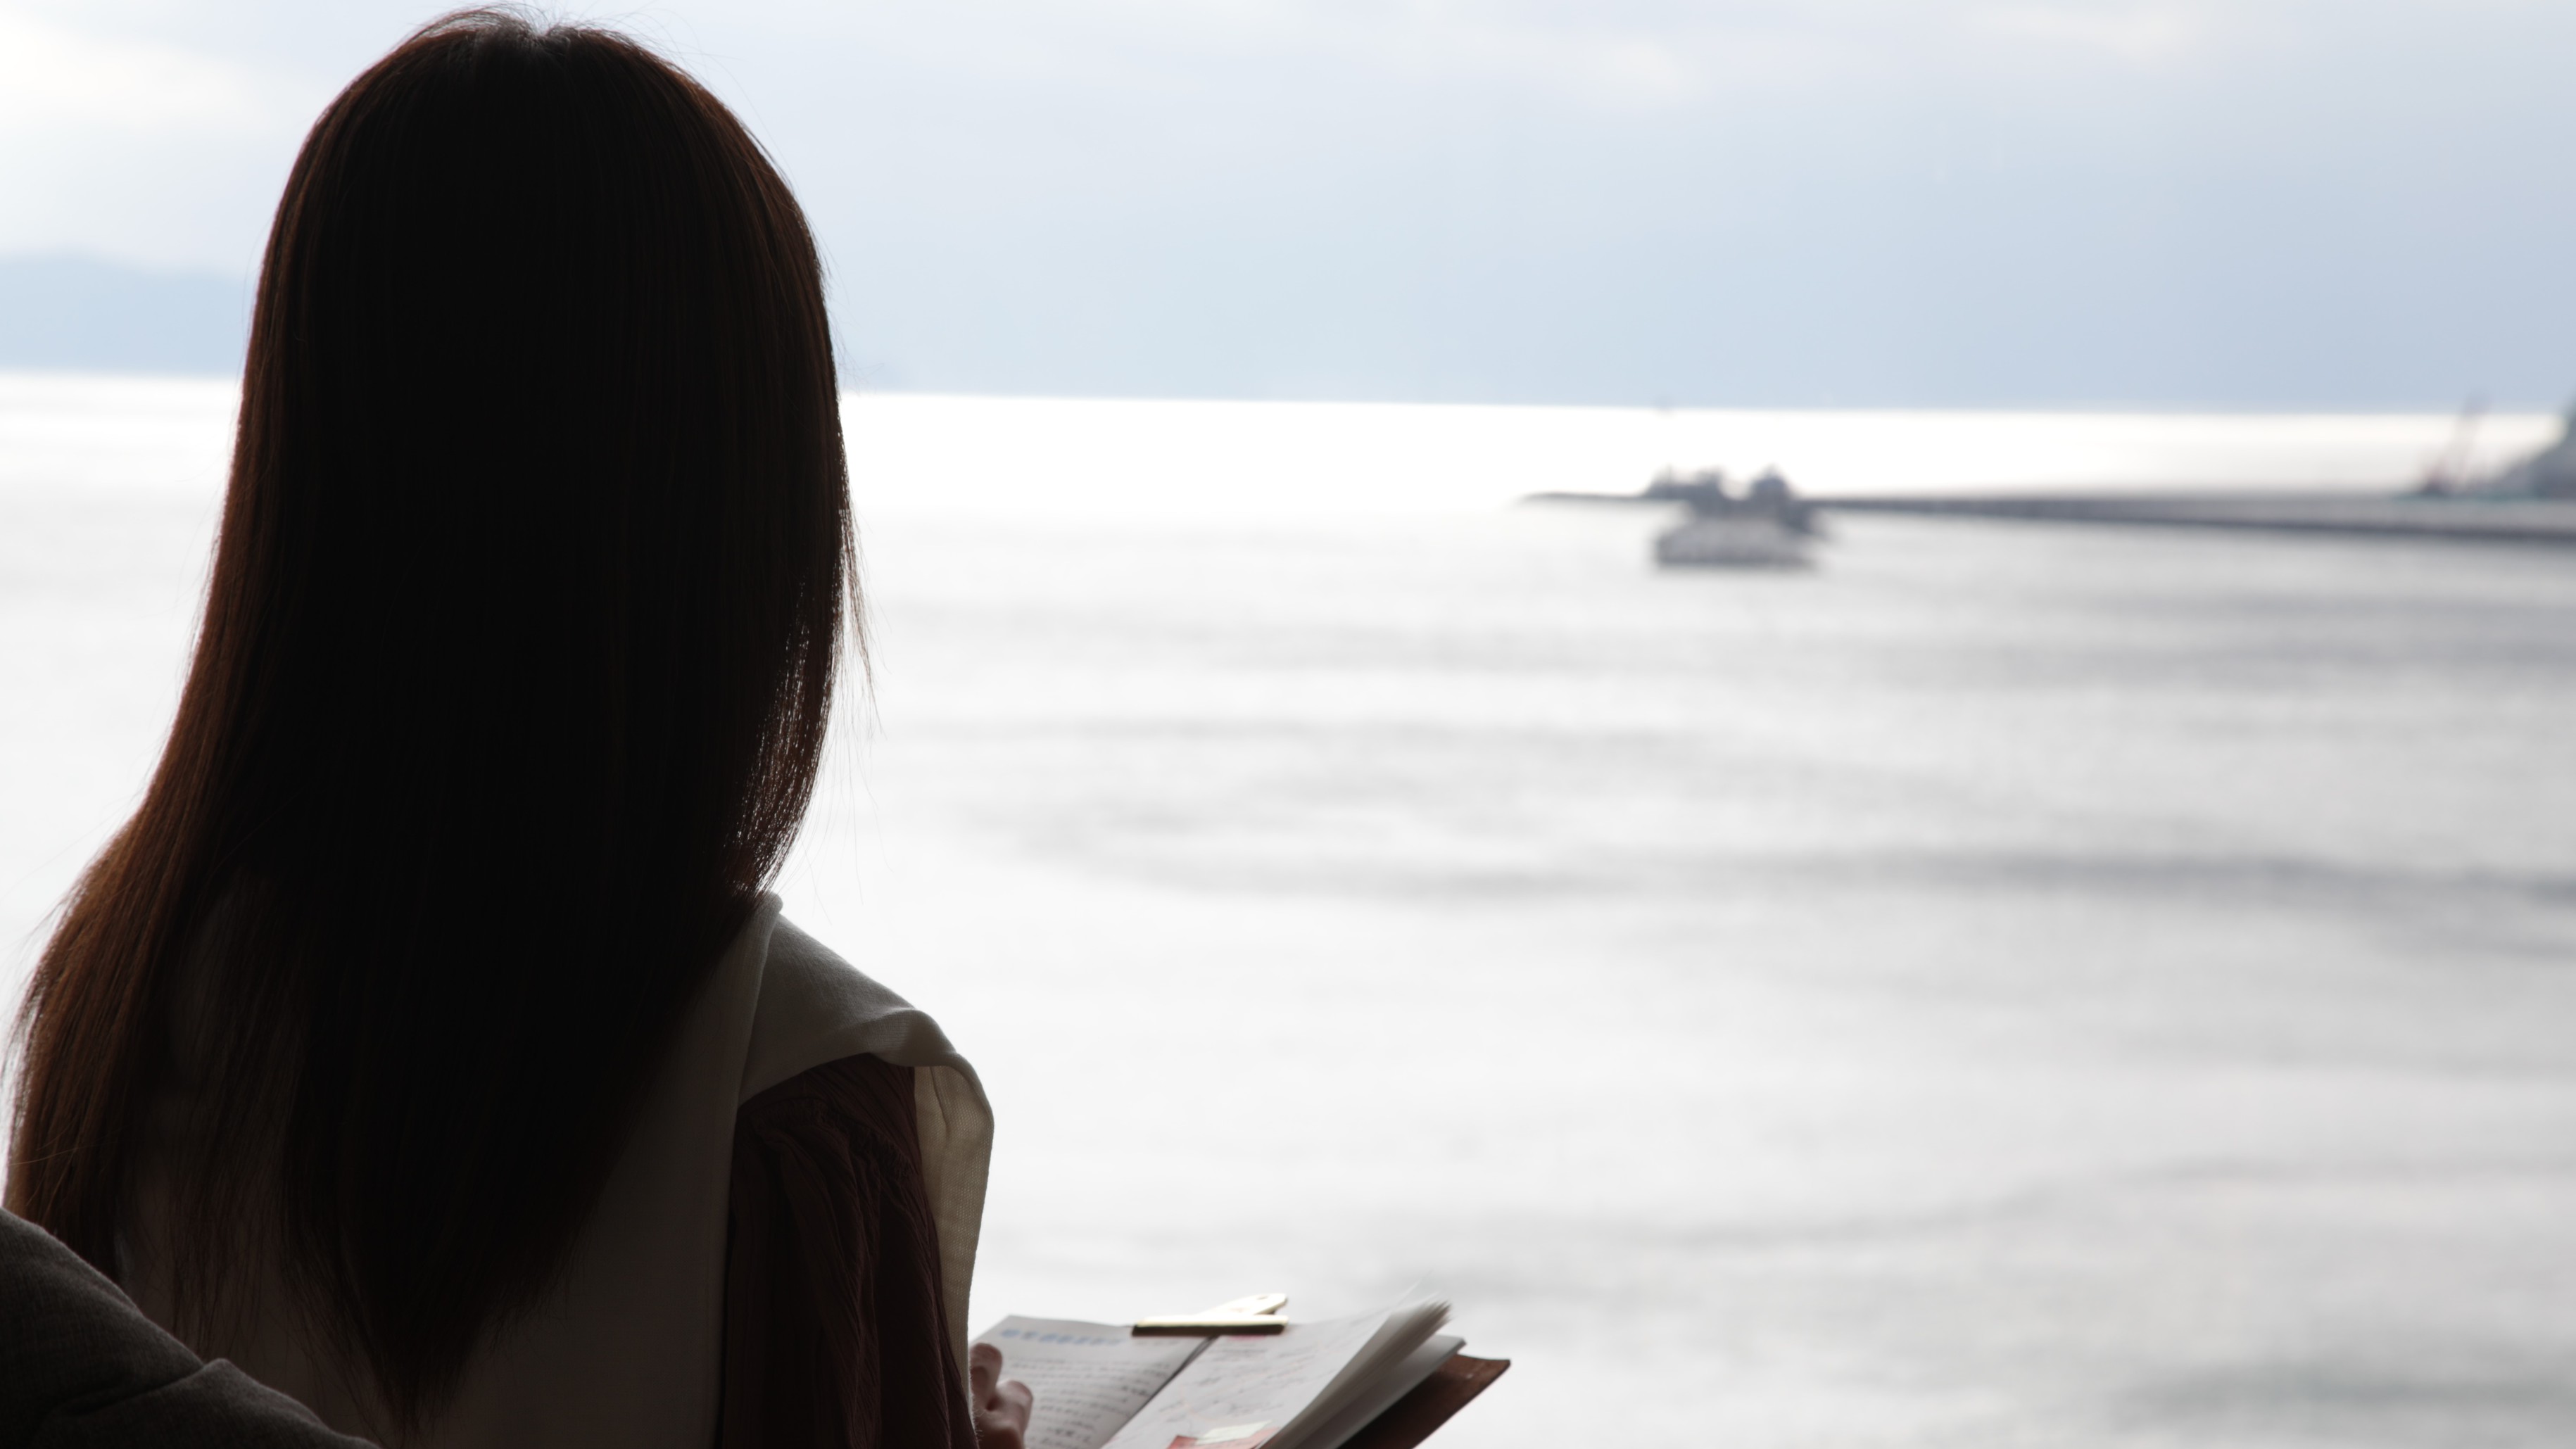 【ロビーでぼ~っと】私だけの時間。目の前の錦江湾を眺めながら今日一日を振り返る。